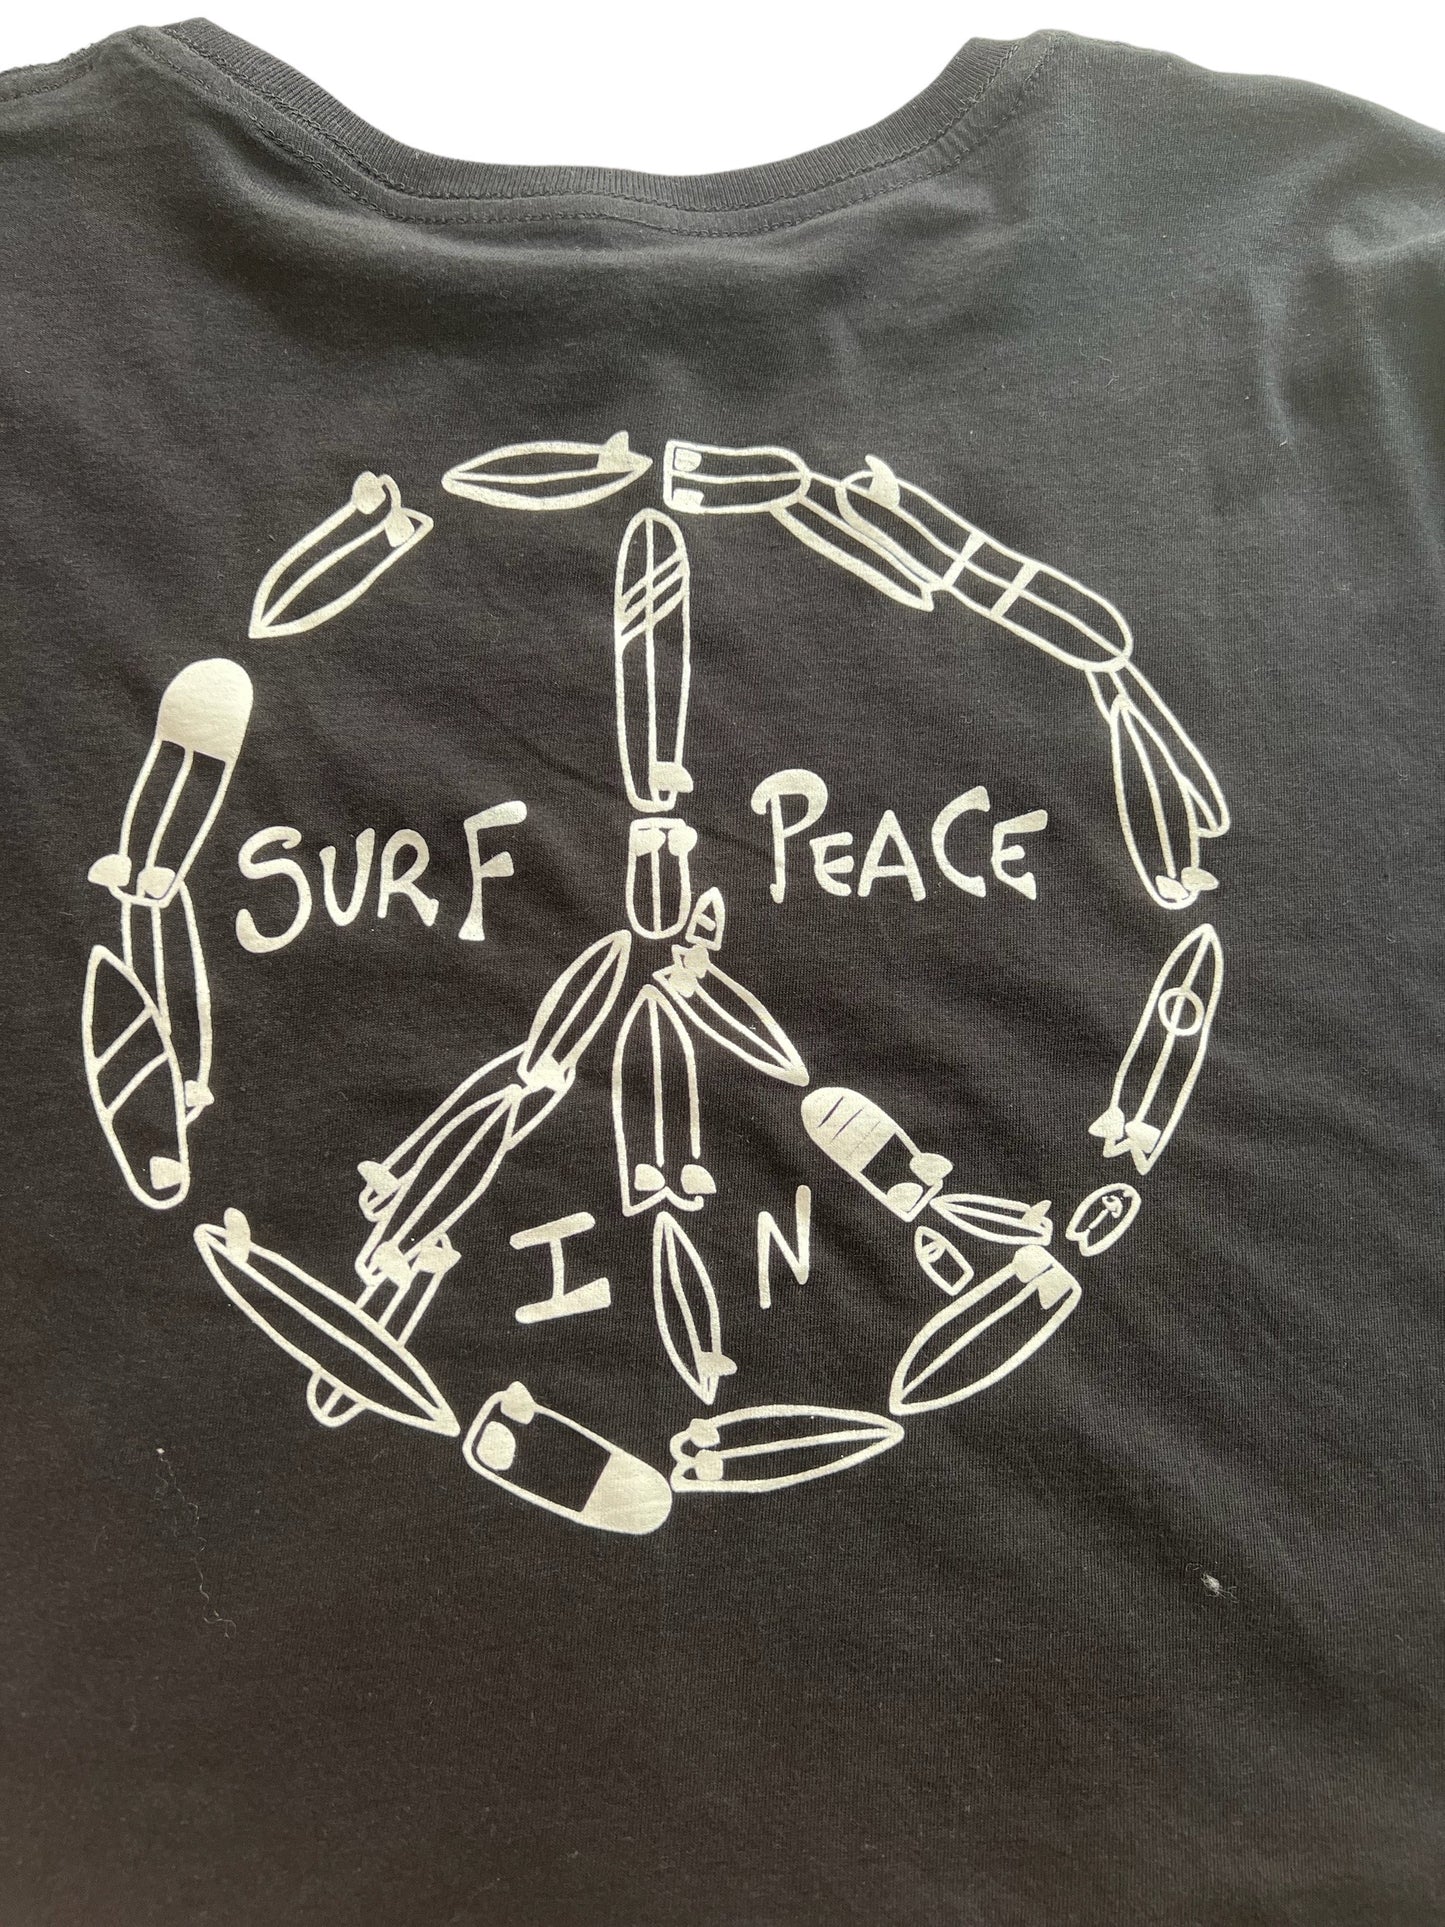 Camiseta Lunatic vision of surfing